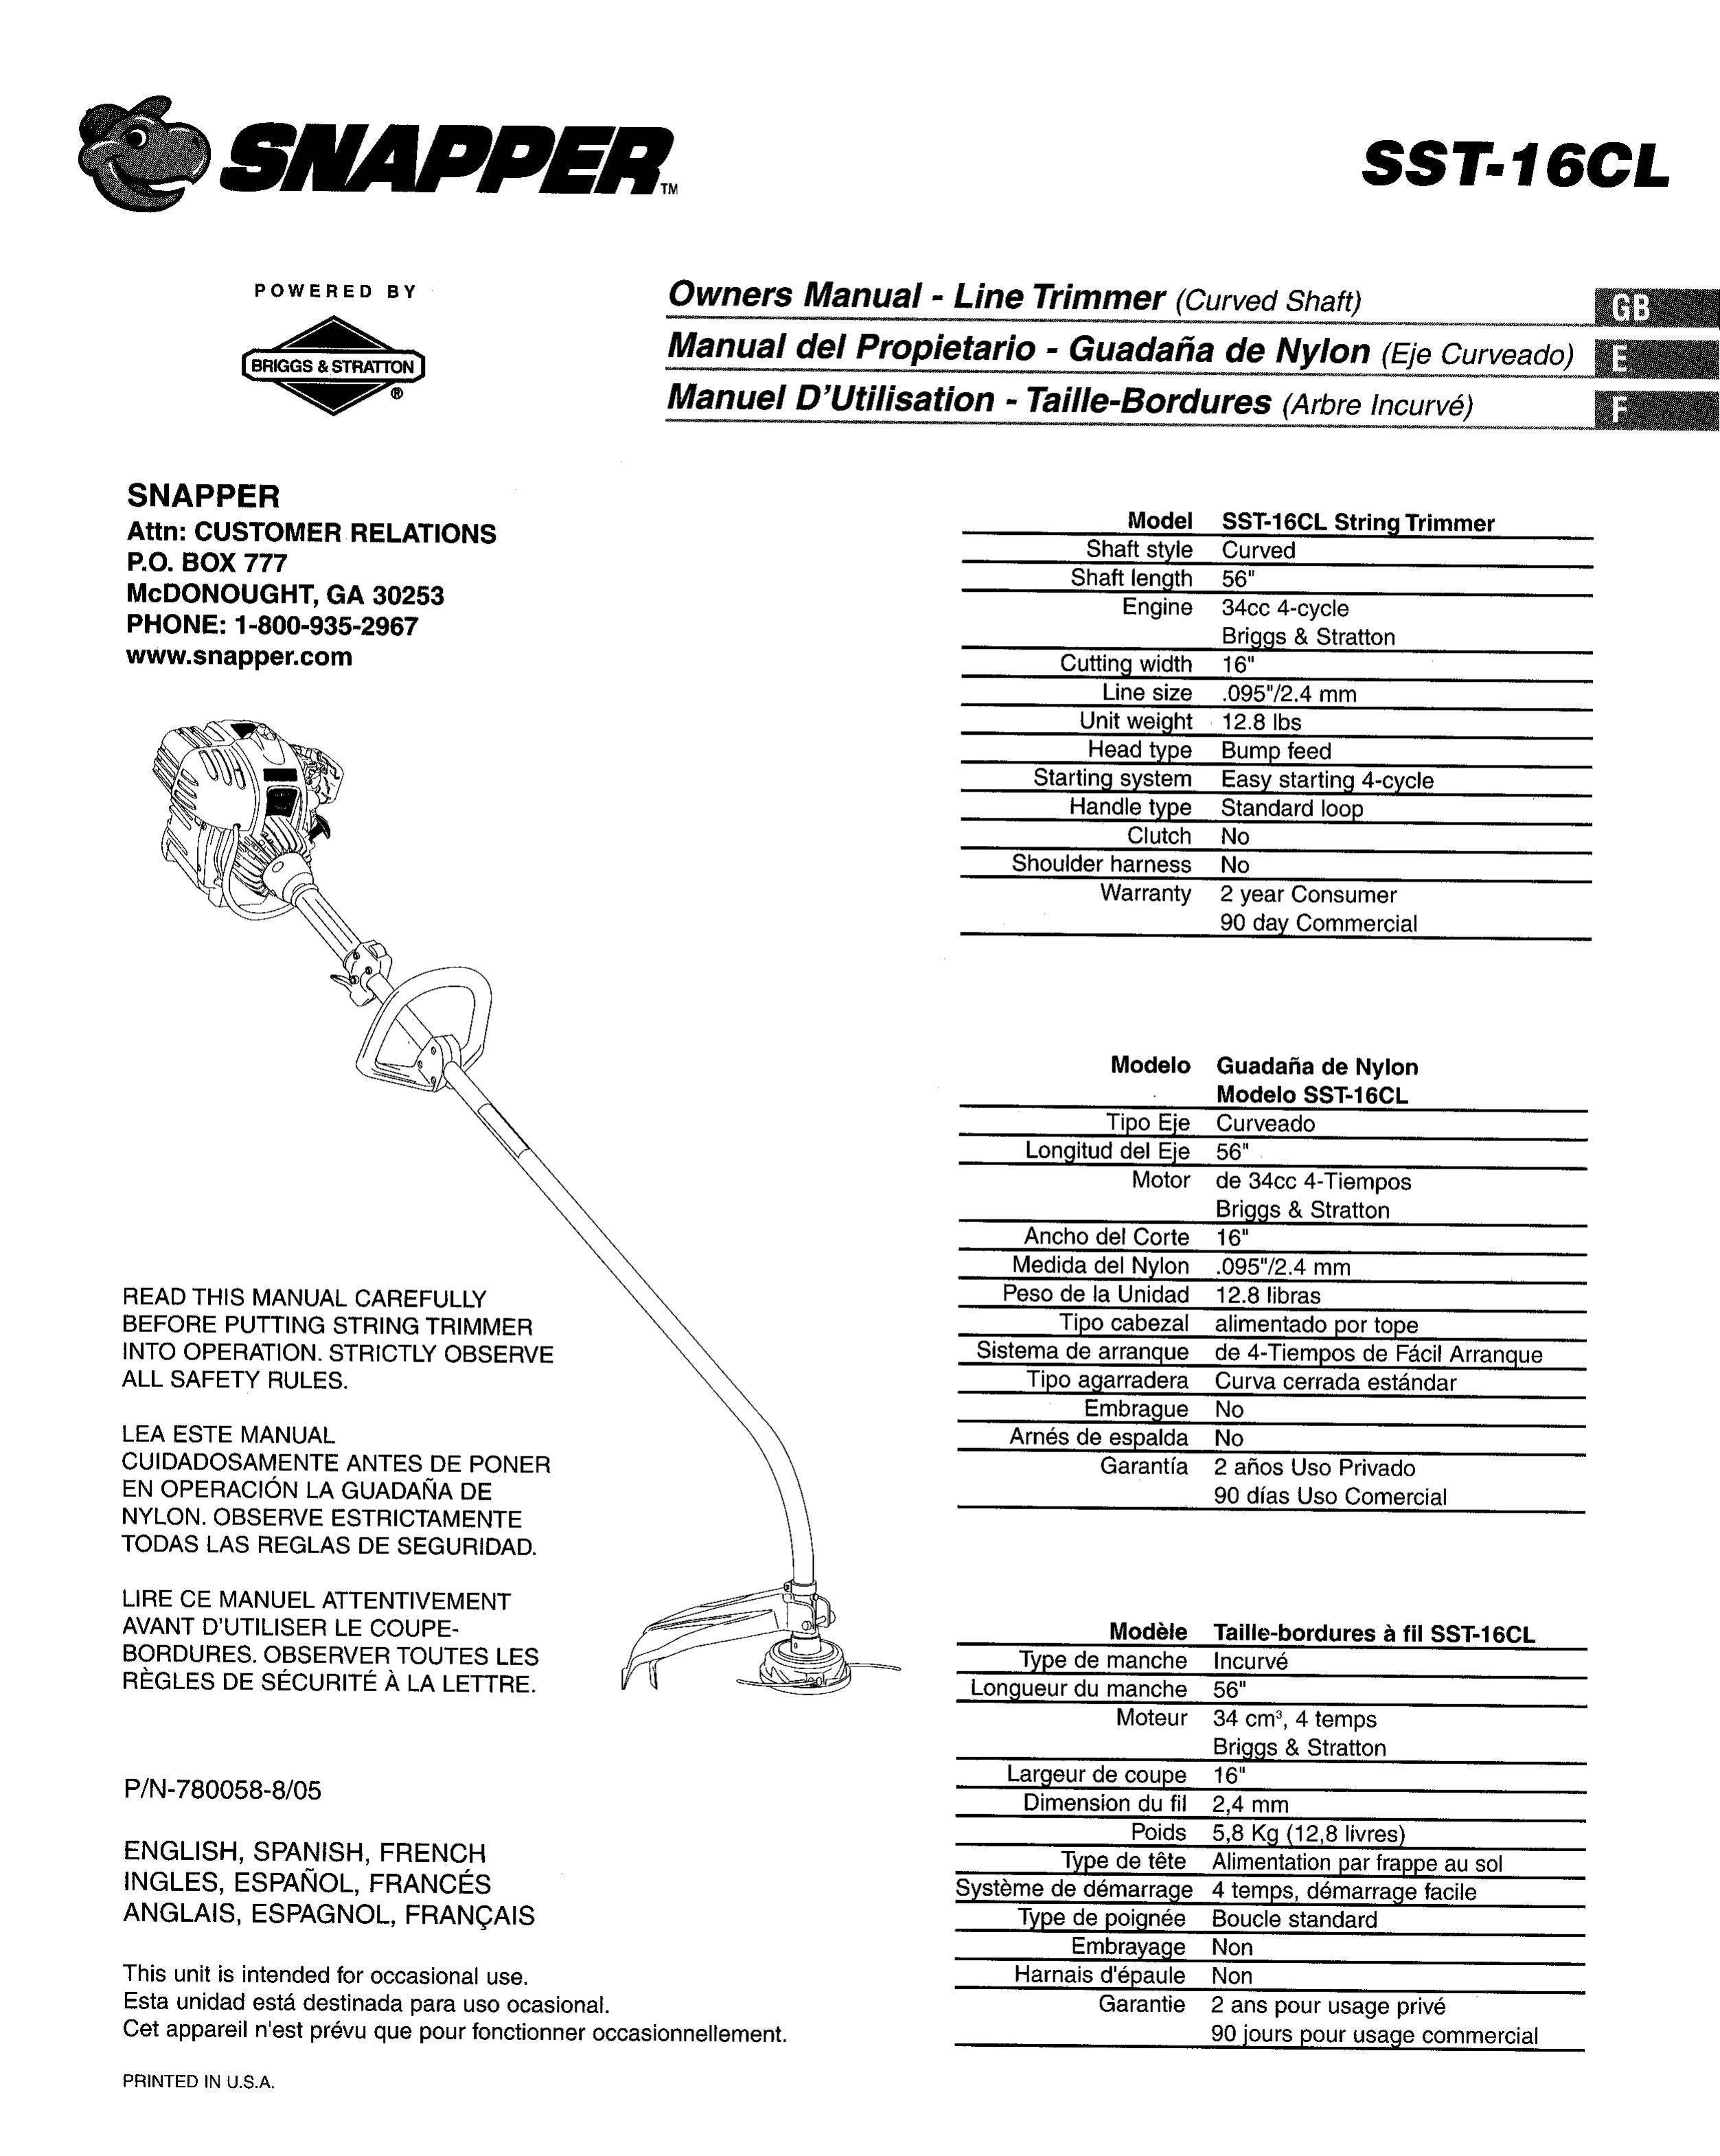 Snapper SST-16CL Trimmer User Manual